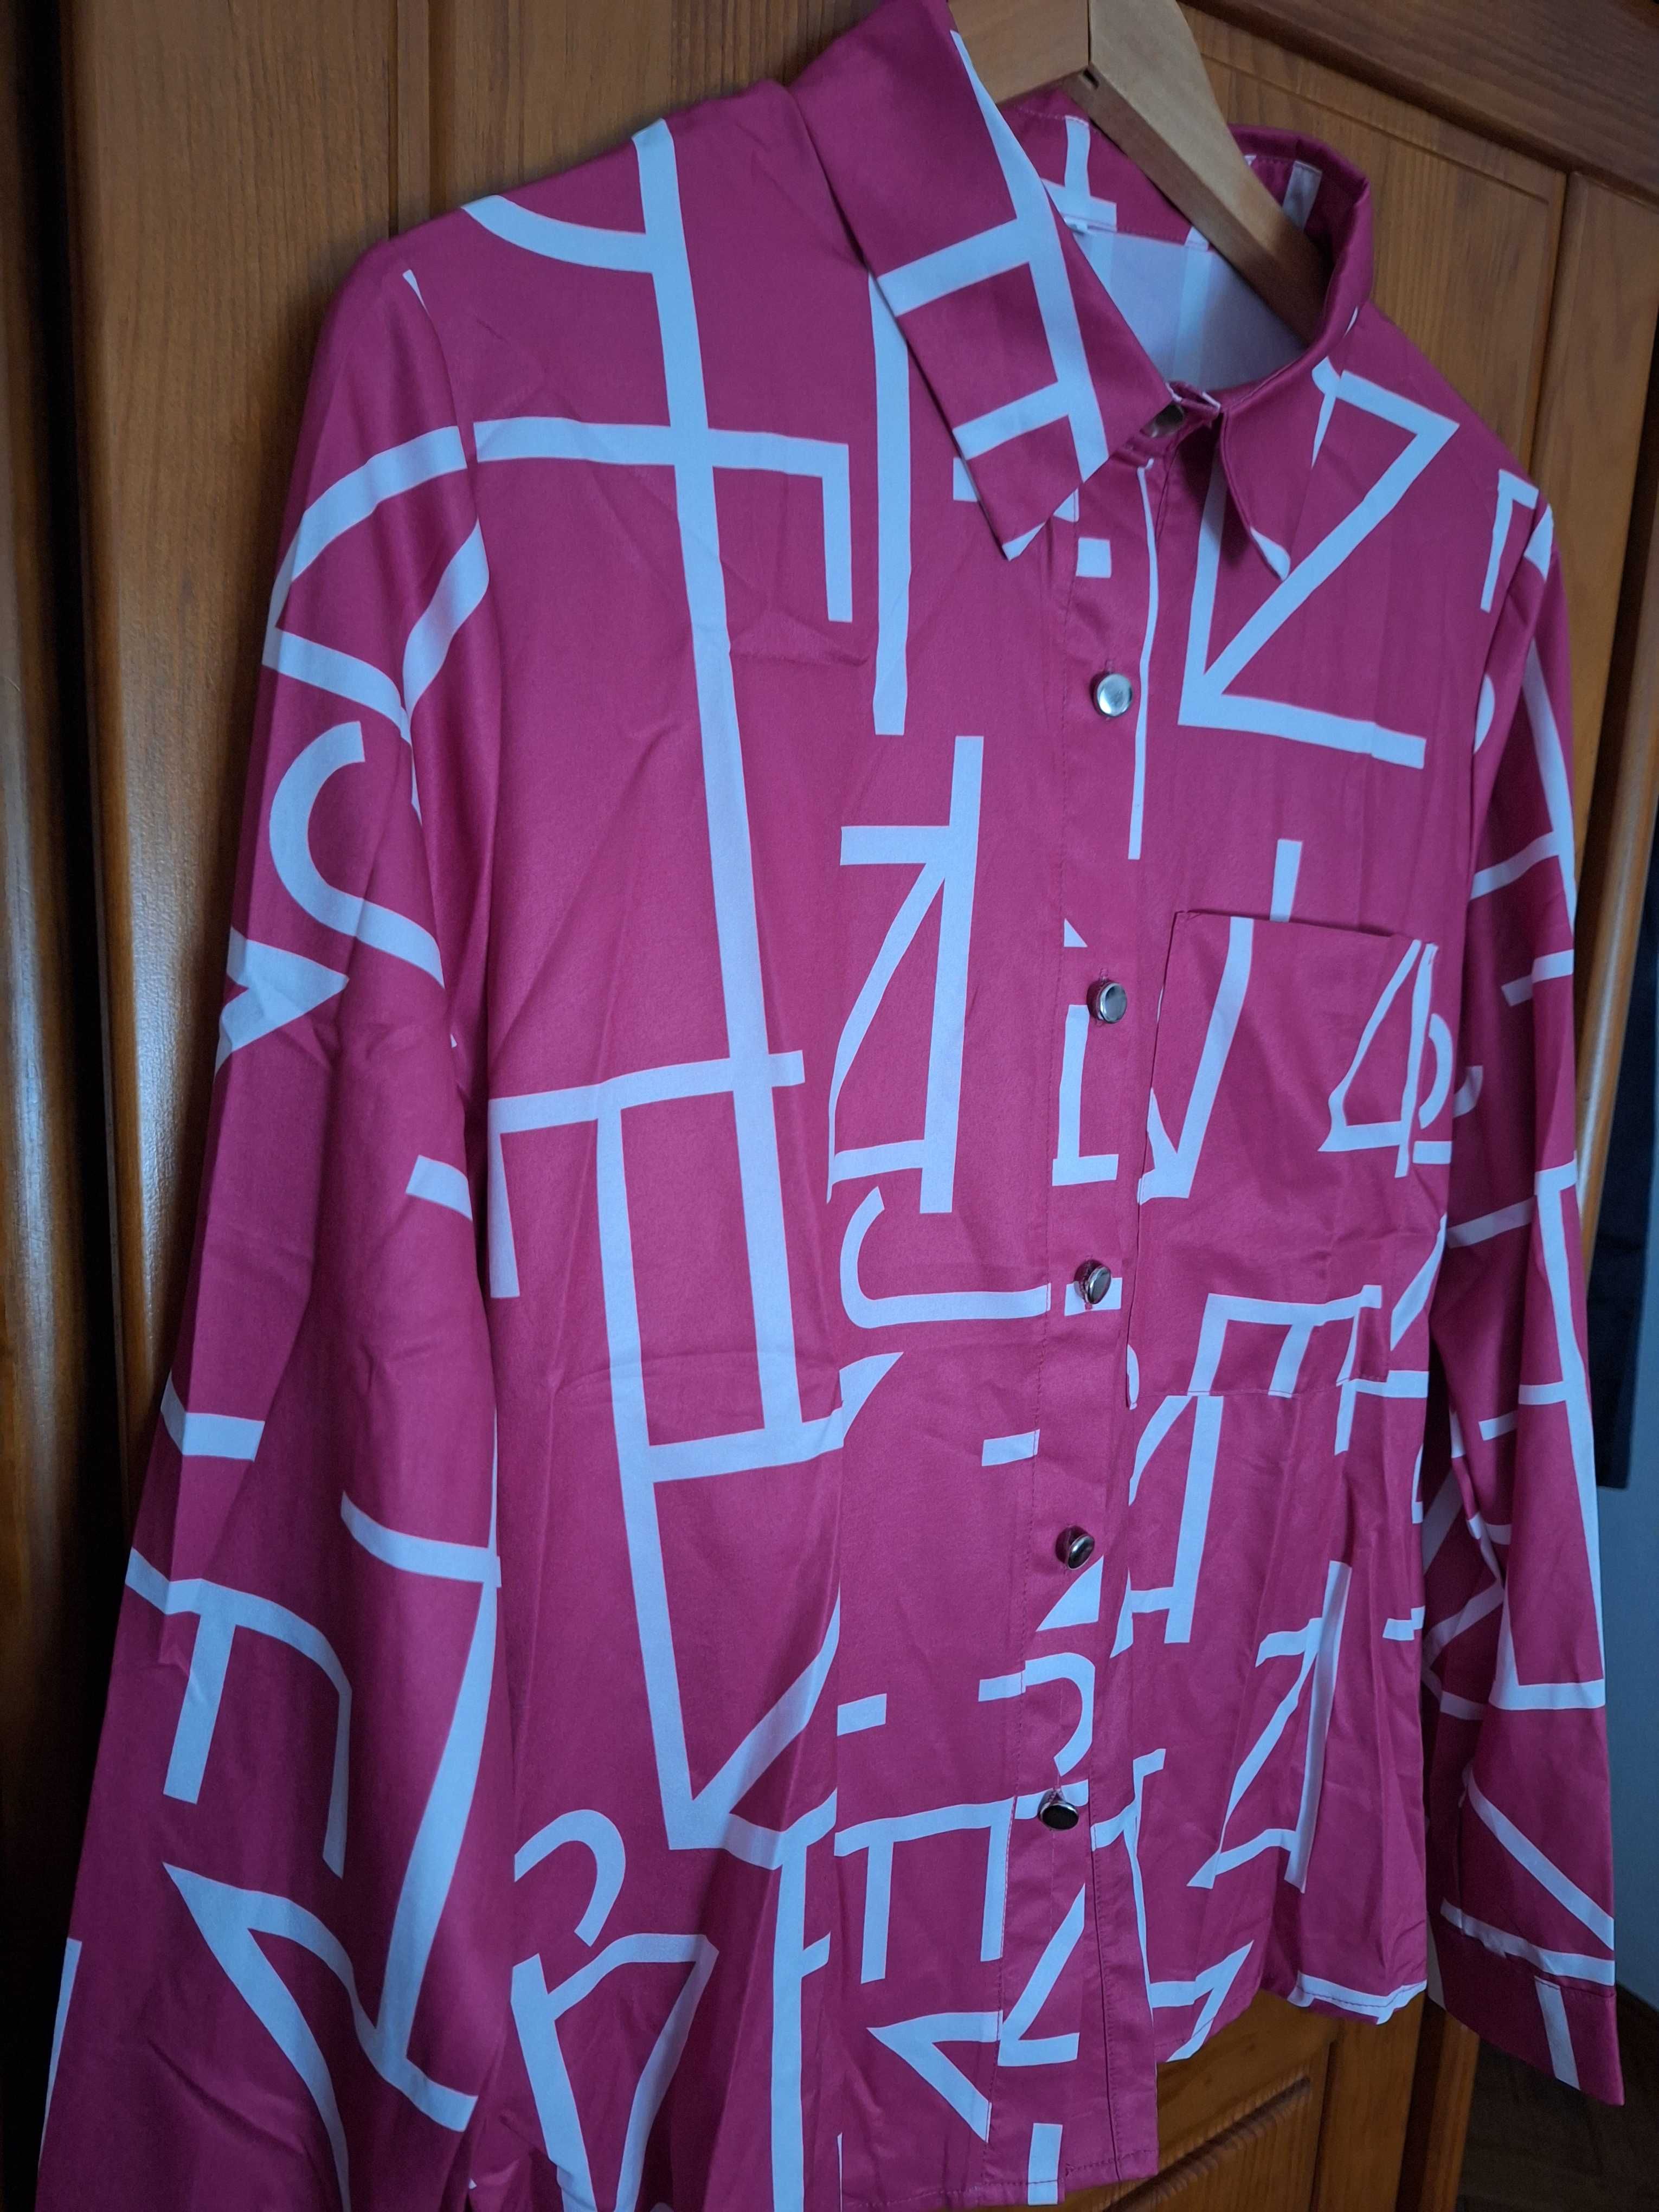 Camisa vintage cor-de-rosa vivo com padrão geométrico em branco